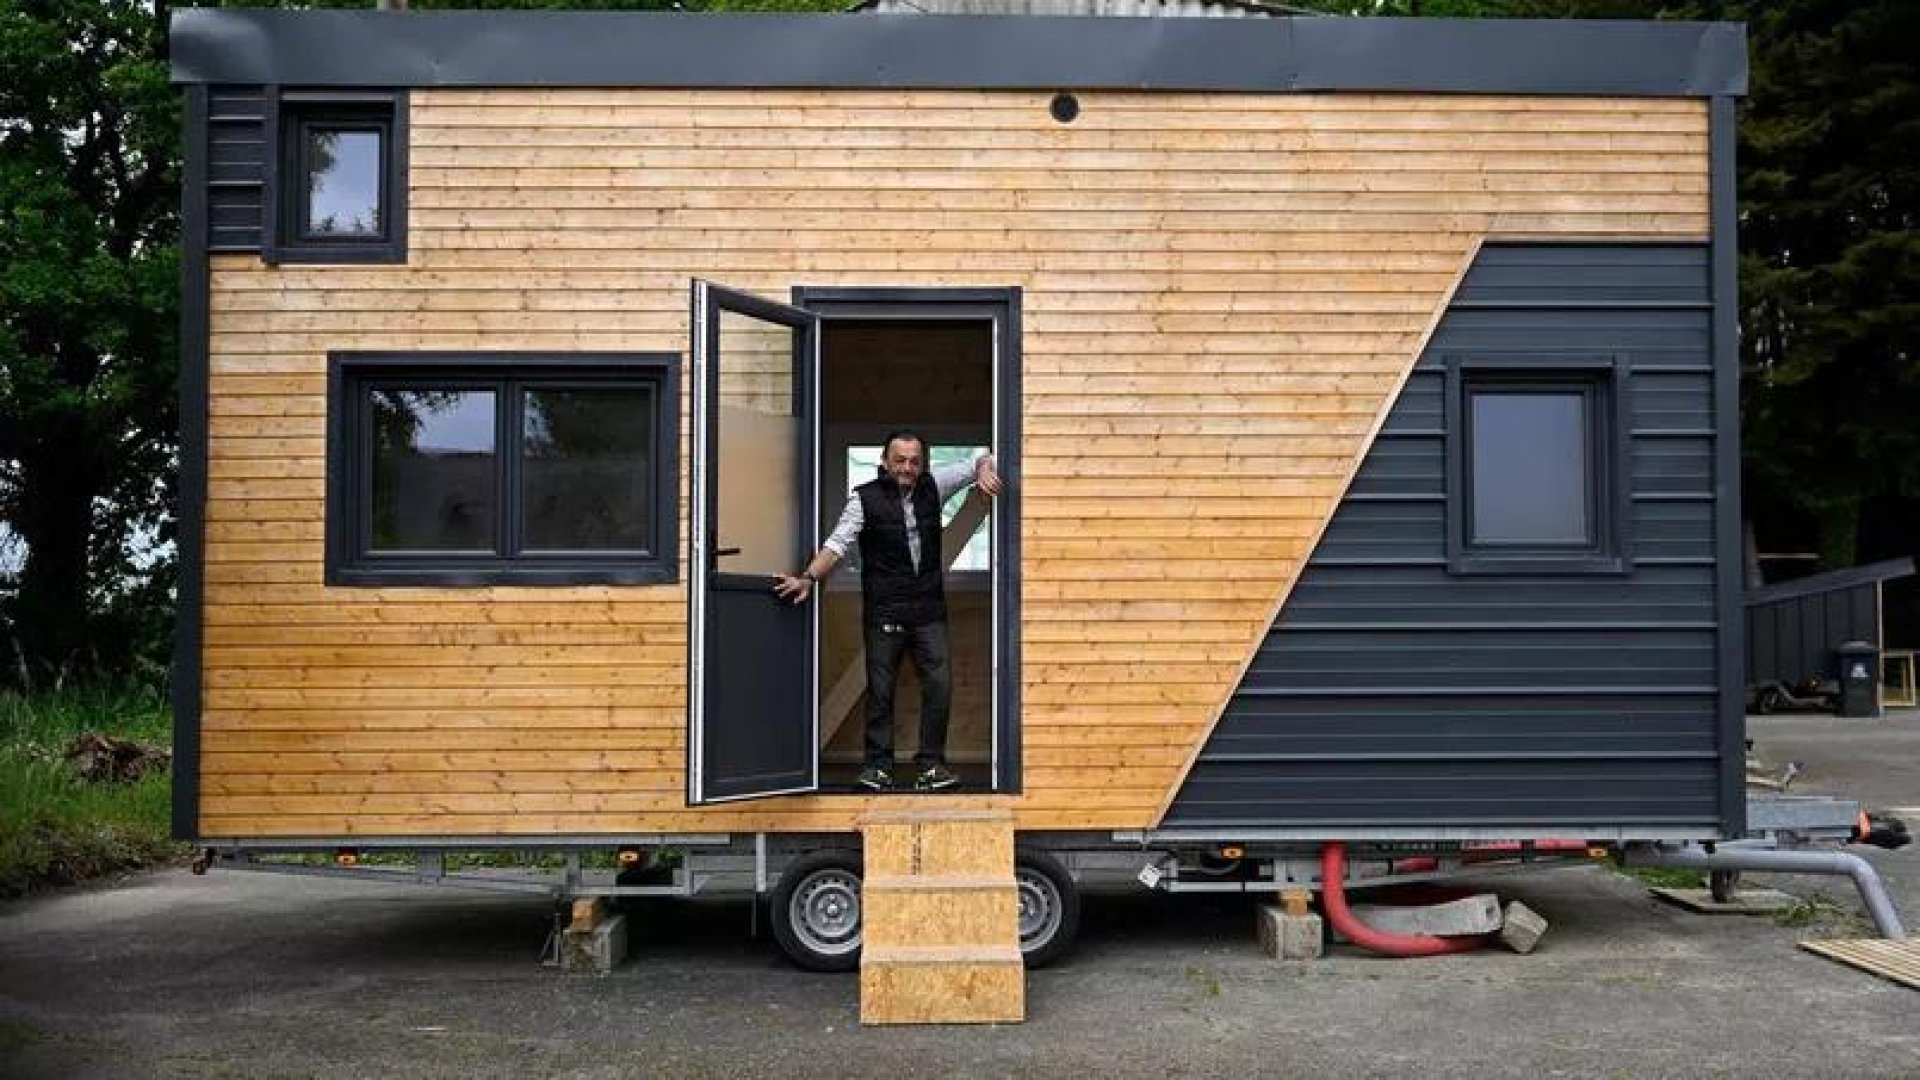 Construir 'pequeñas casas' y facilitar a las personas sin techo un lugar  para vivir - BrightVibes